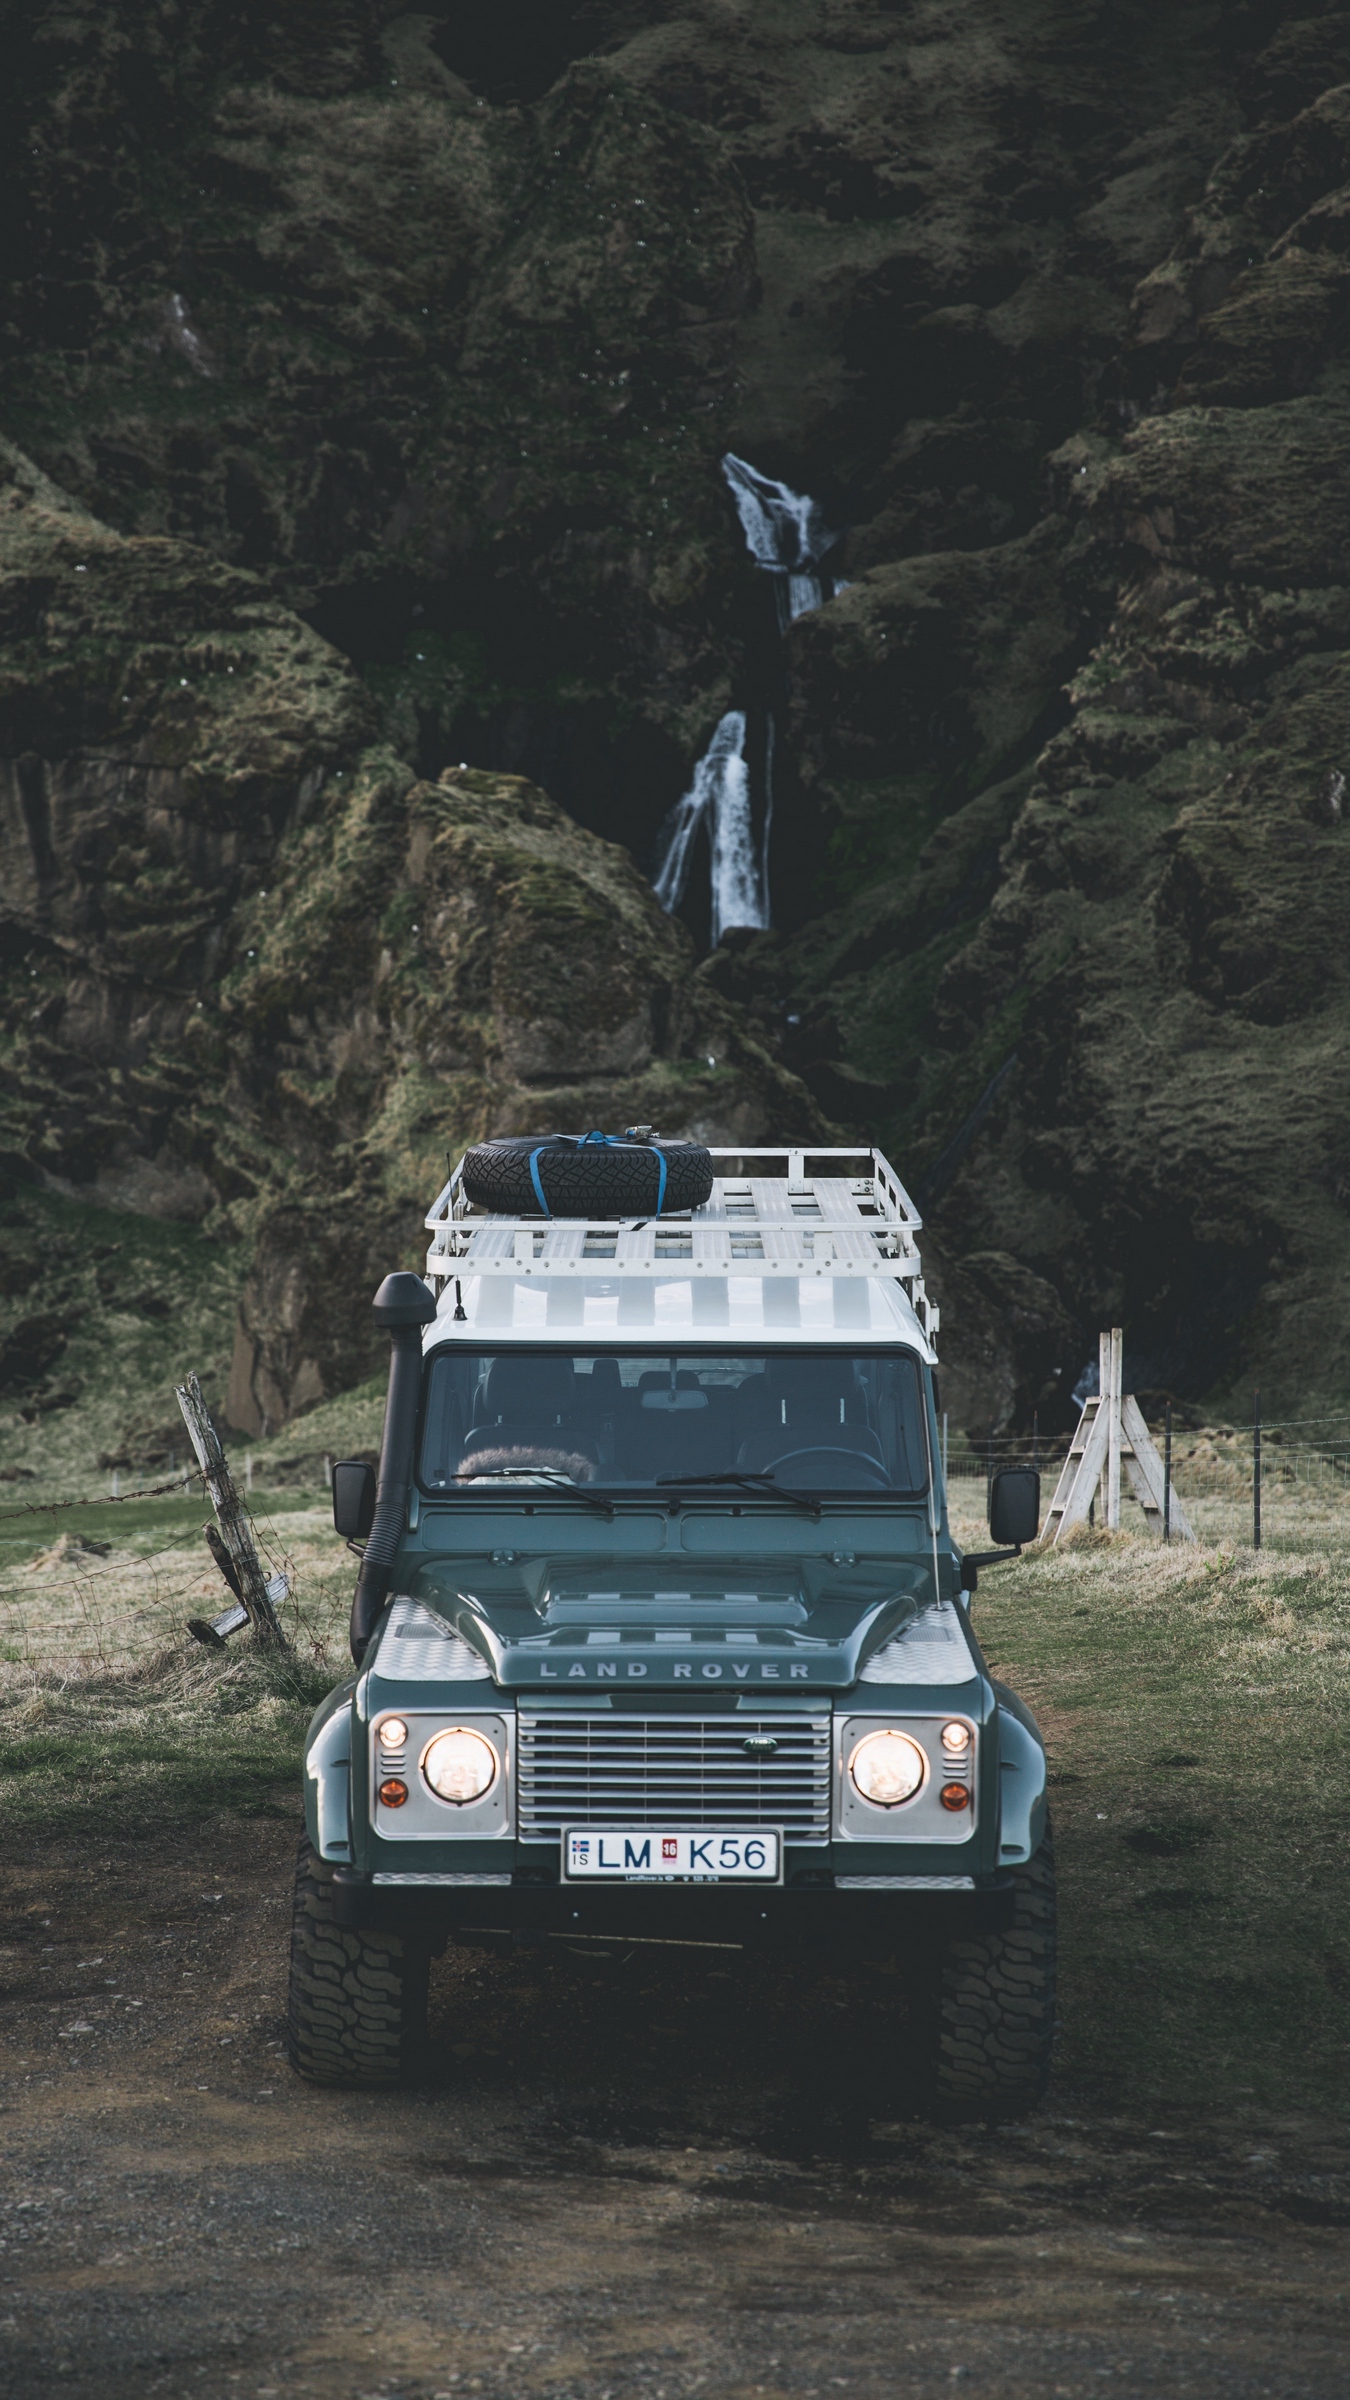 Wallpaper Land Rover Suv Mountains Car